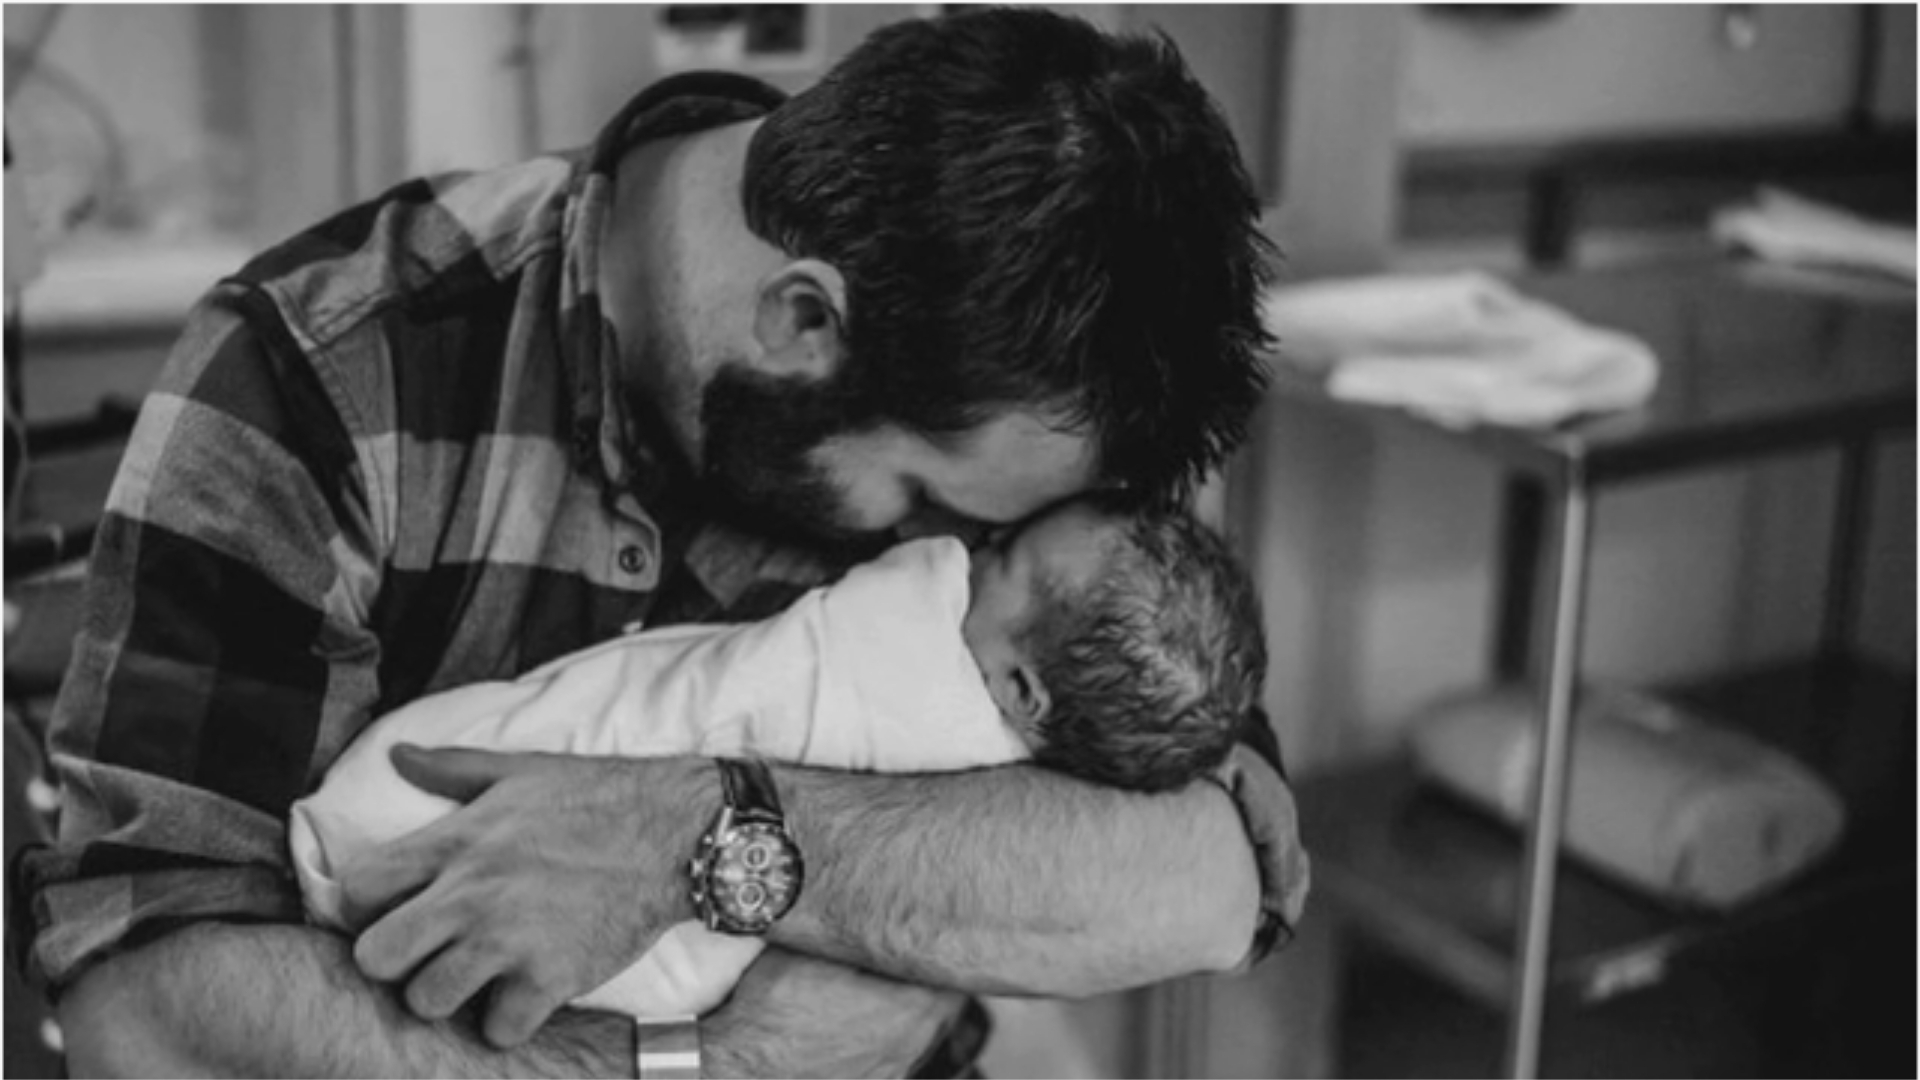 Отец встречается с дочерью. Папа с малышом на руках. Мужчина с ребенком на руках. Трогательные фотографии. Трогательный момент.